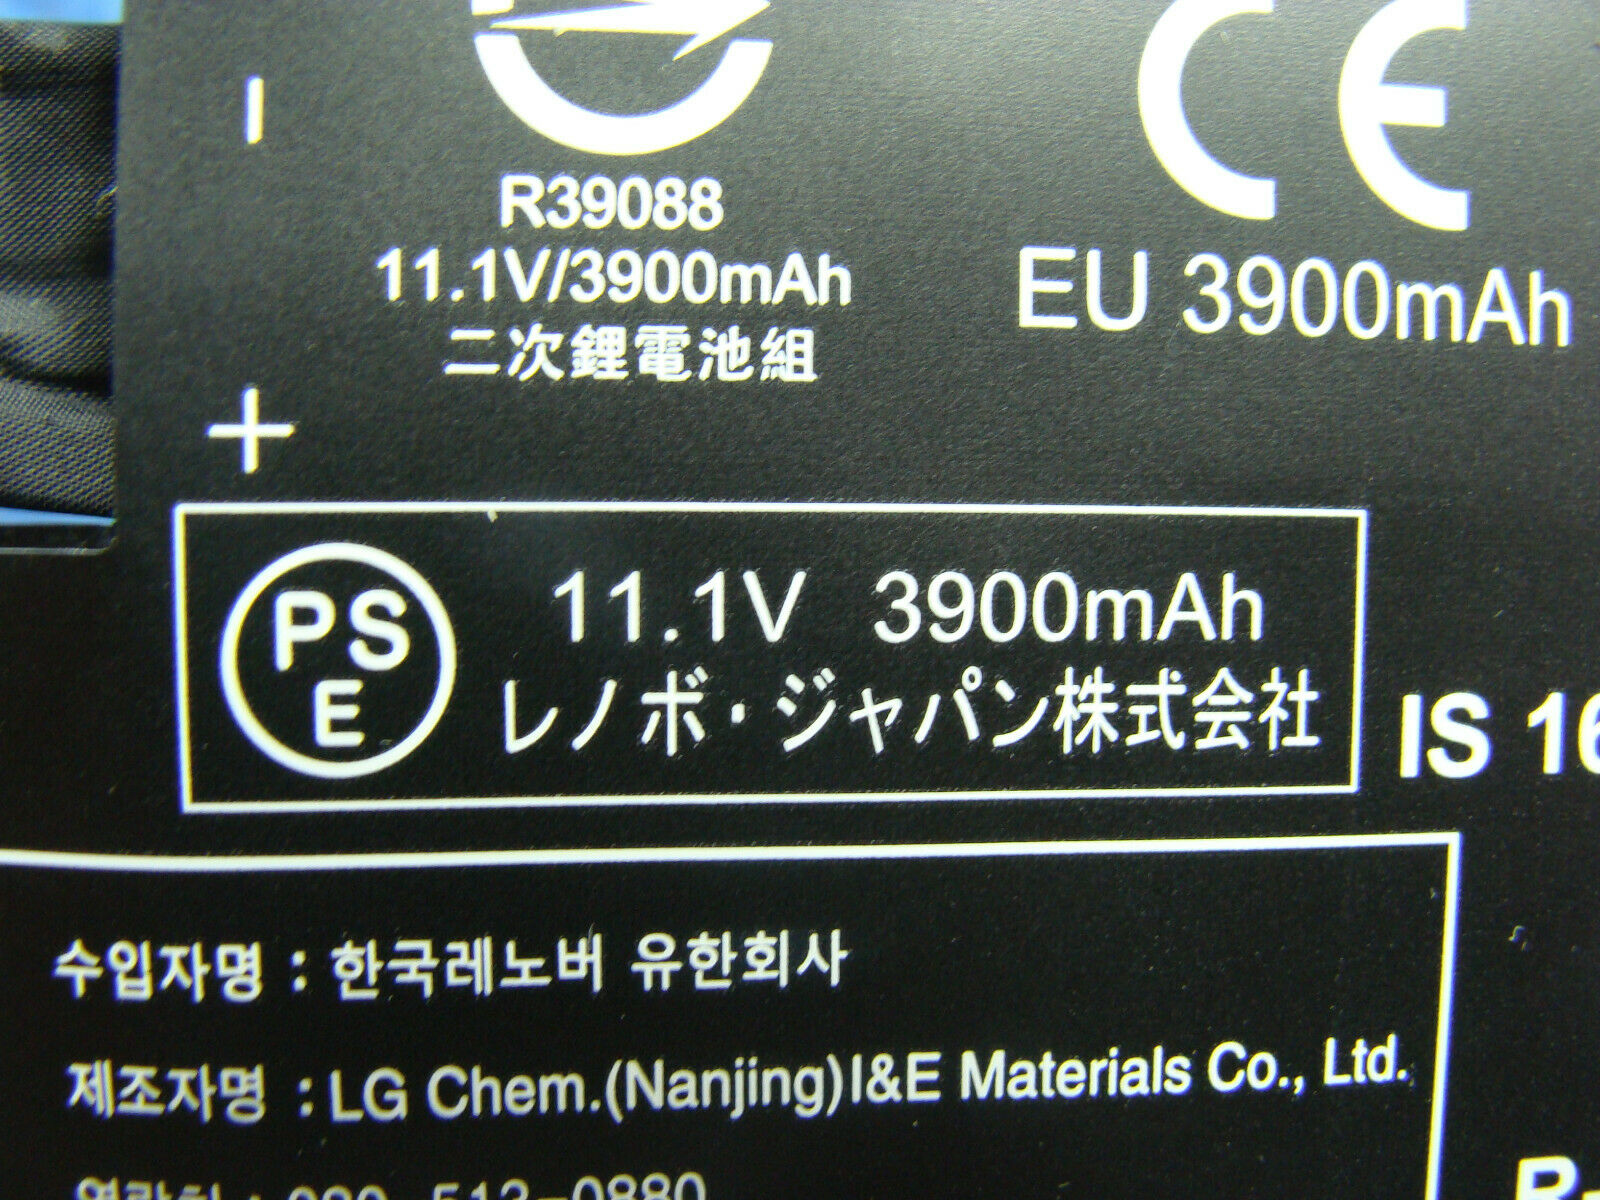 Lenovo N23 11.6